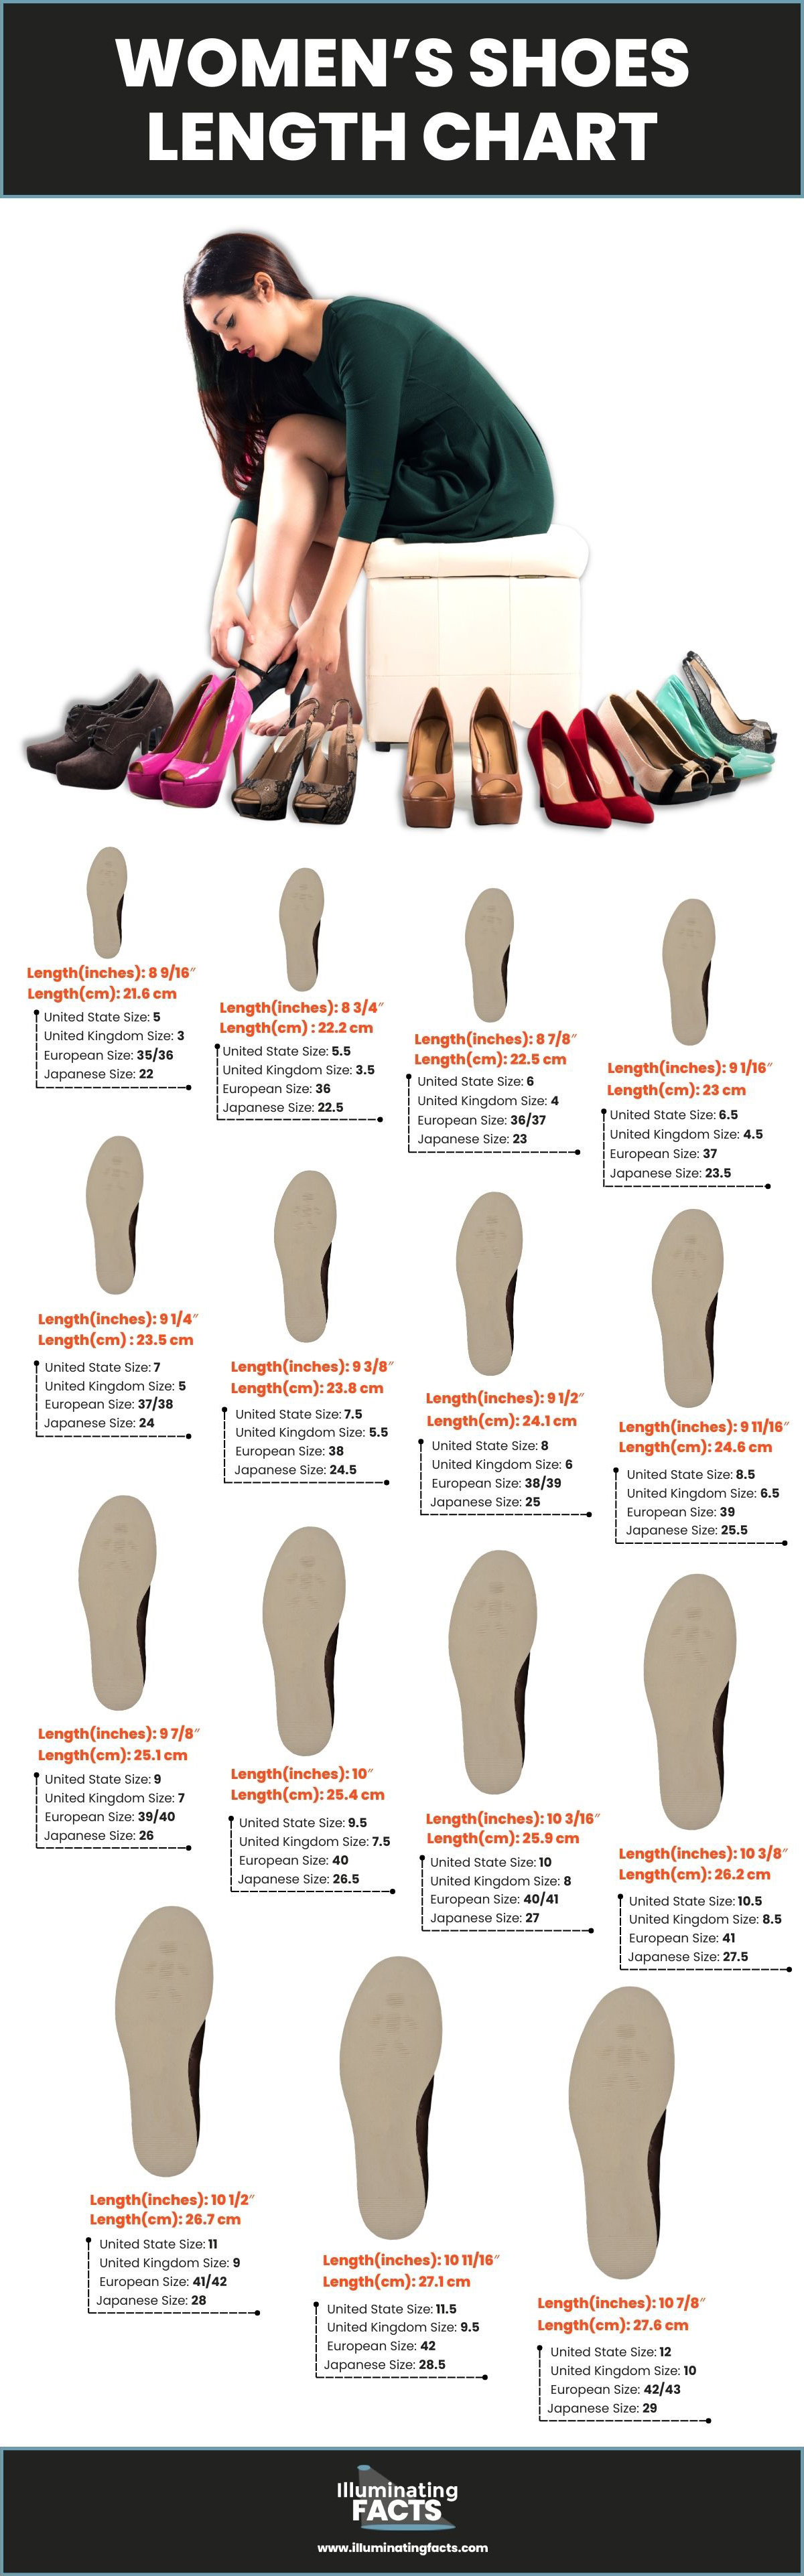 Women’s Shoes Length Chart